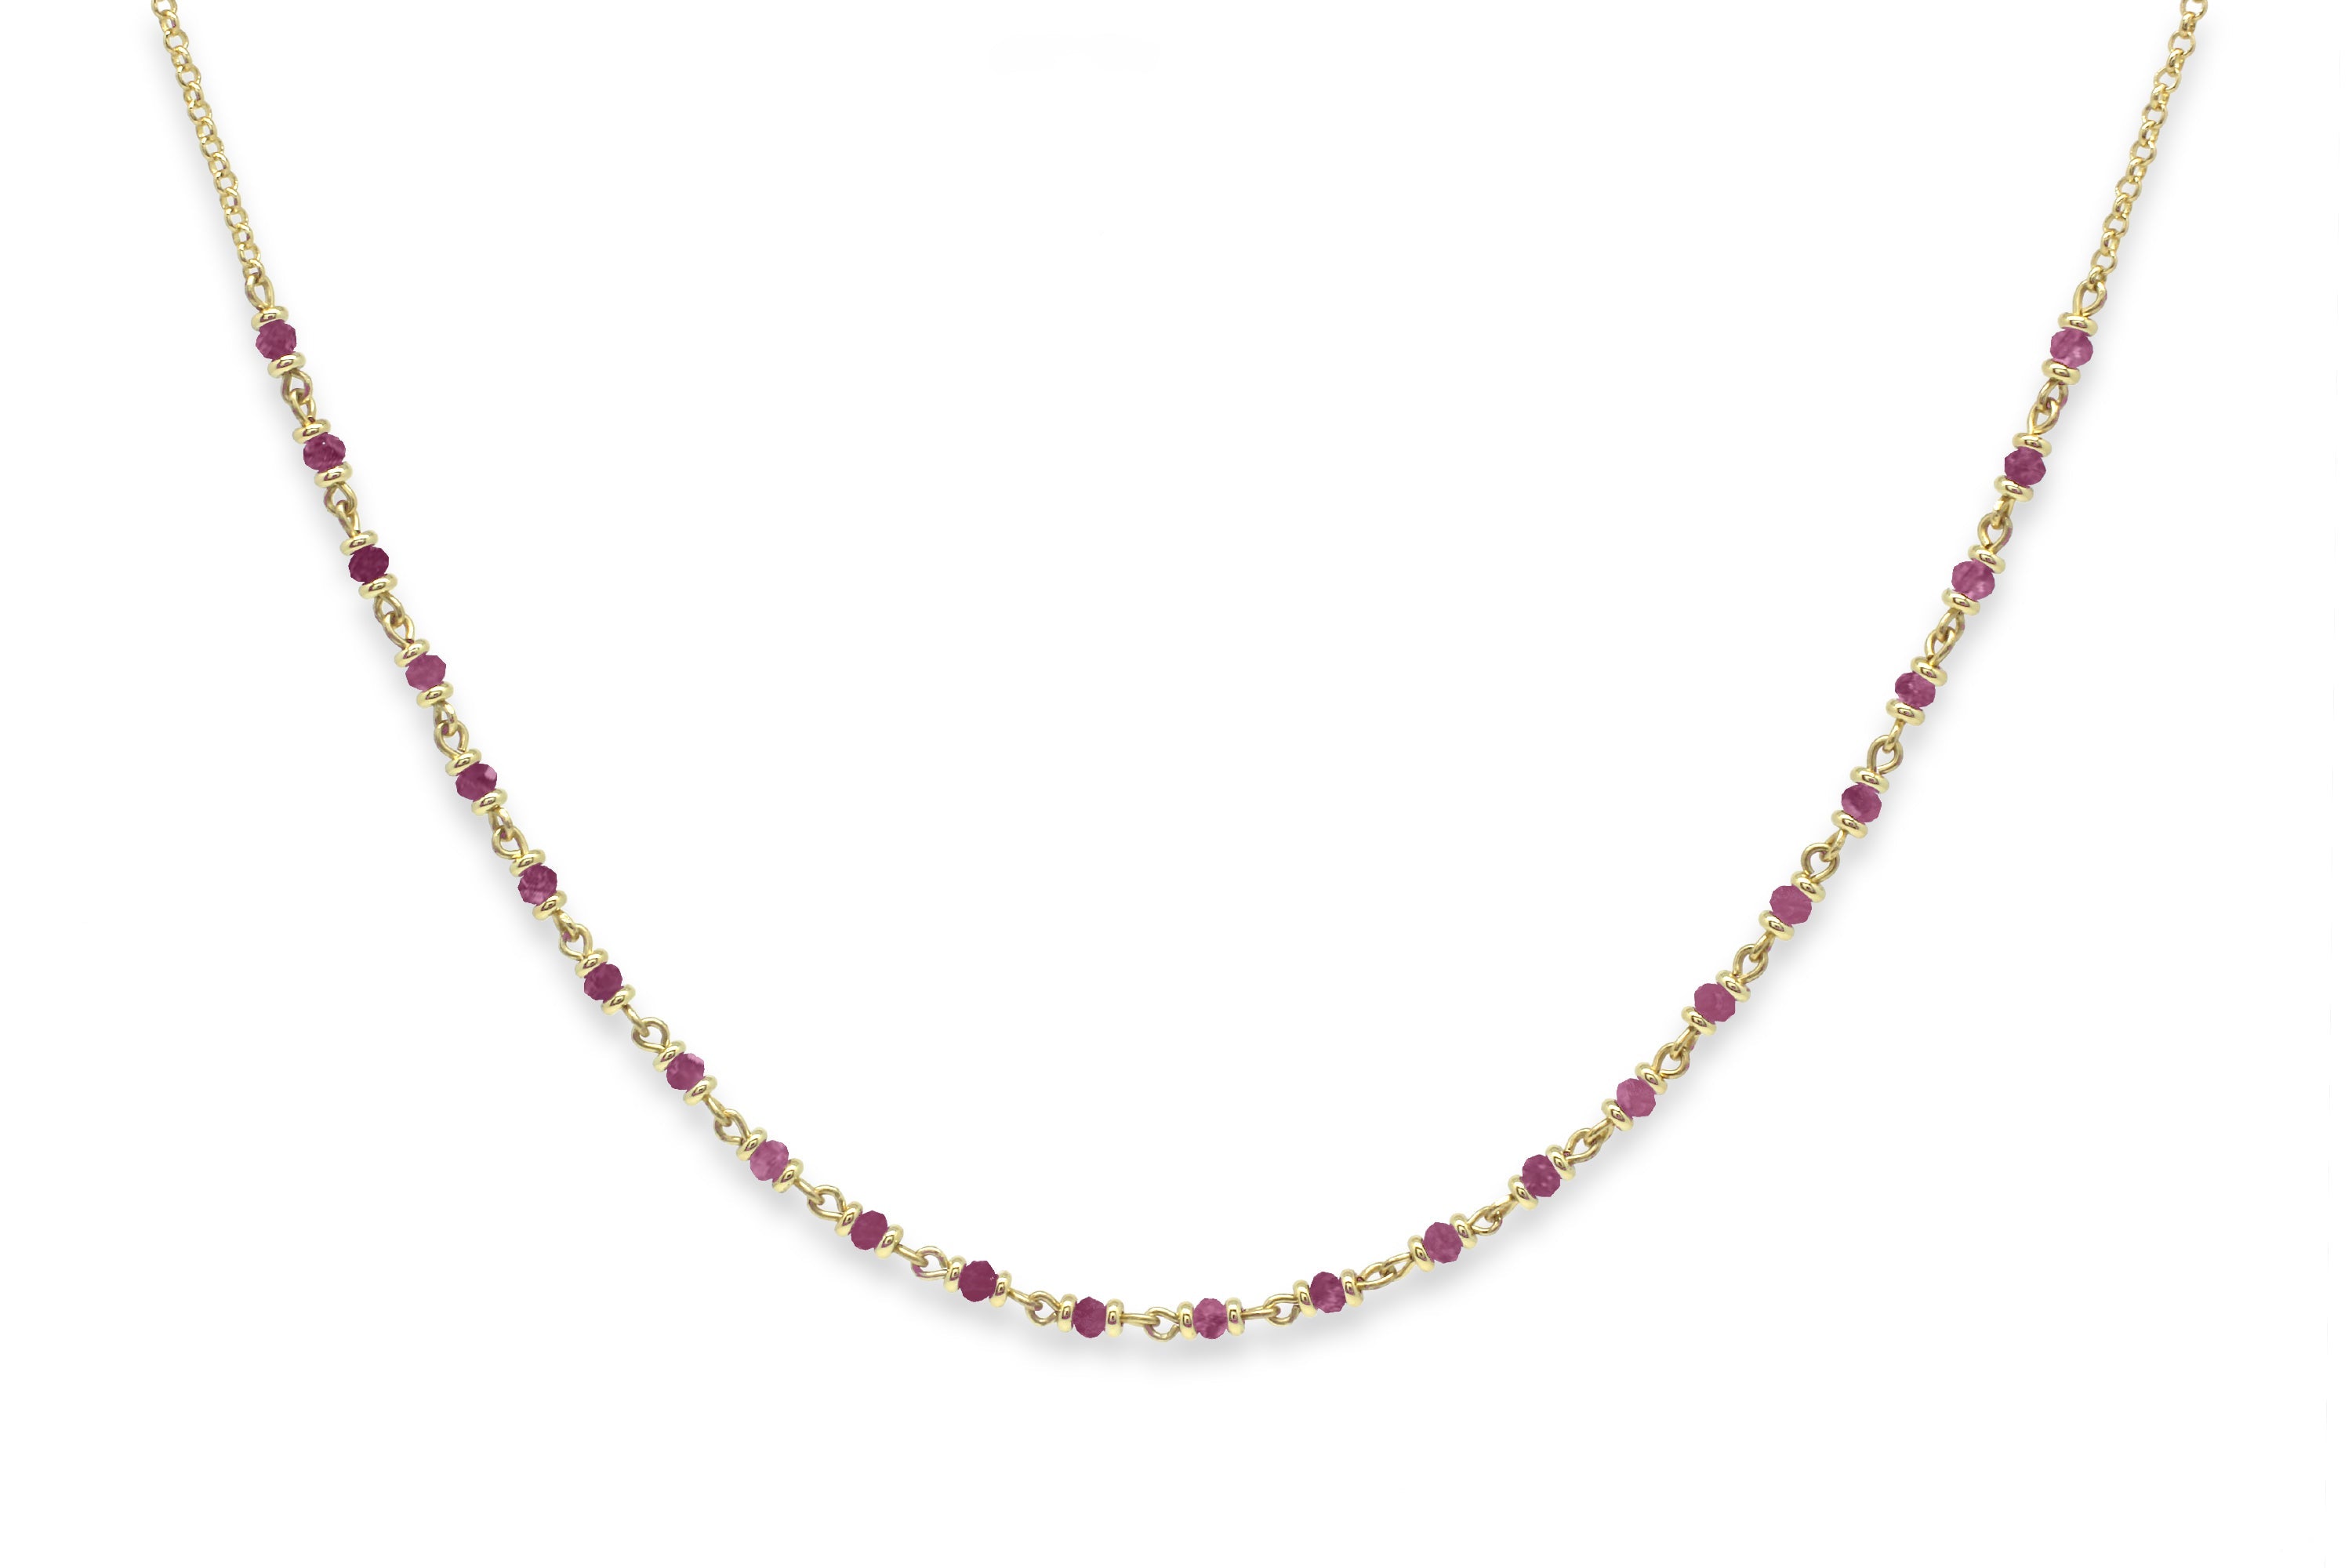 Buy Women's Necklaces Pink Pendant Jewellery Online | Next UK